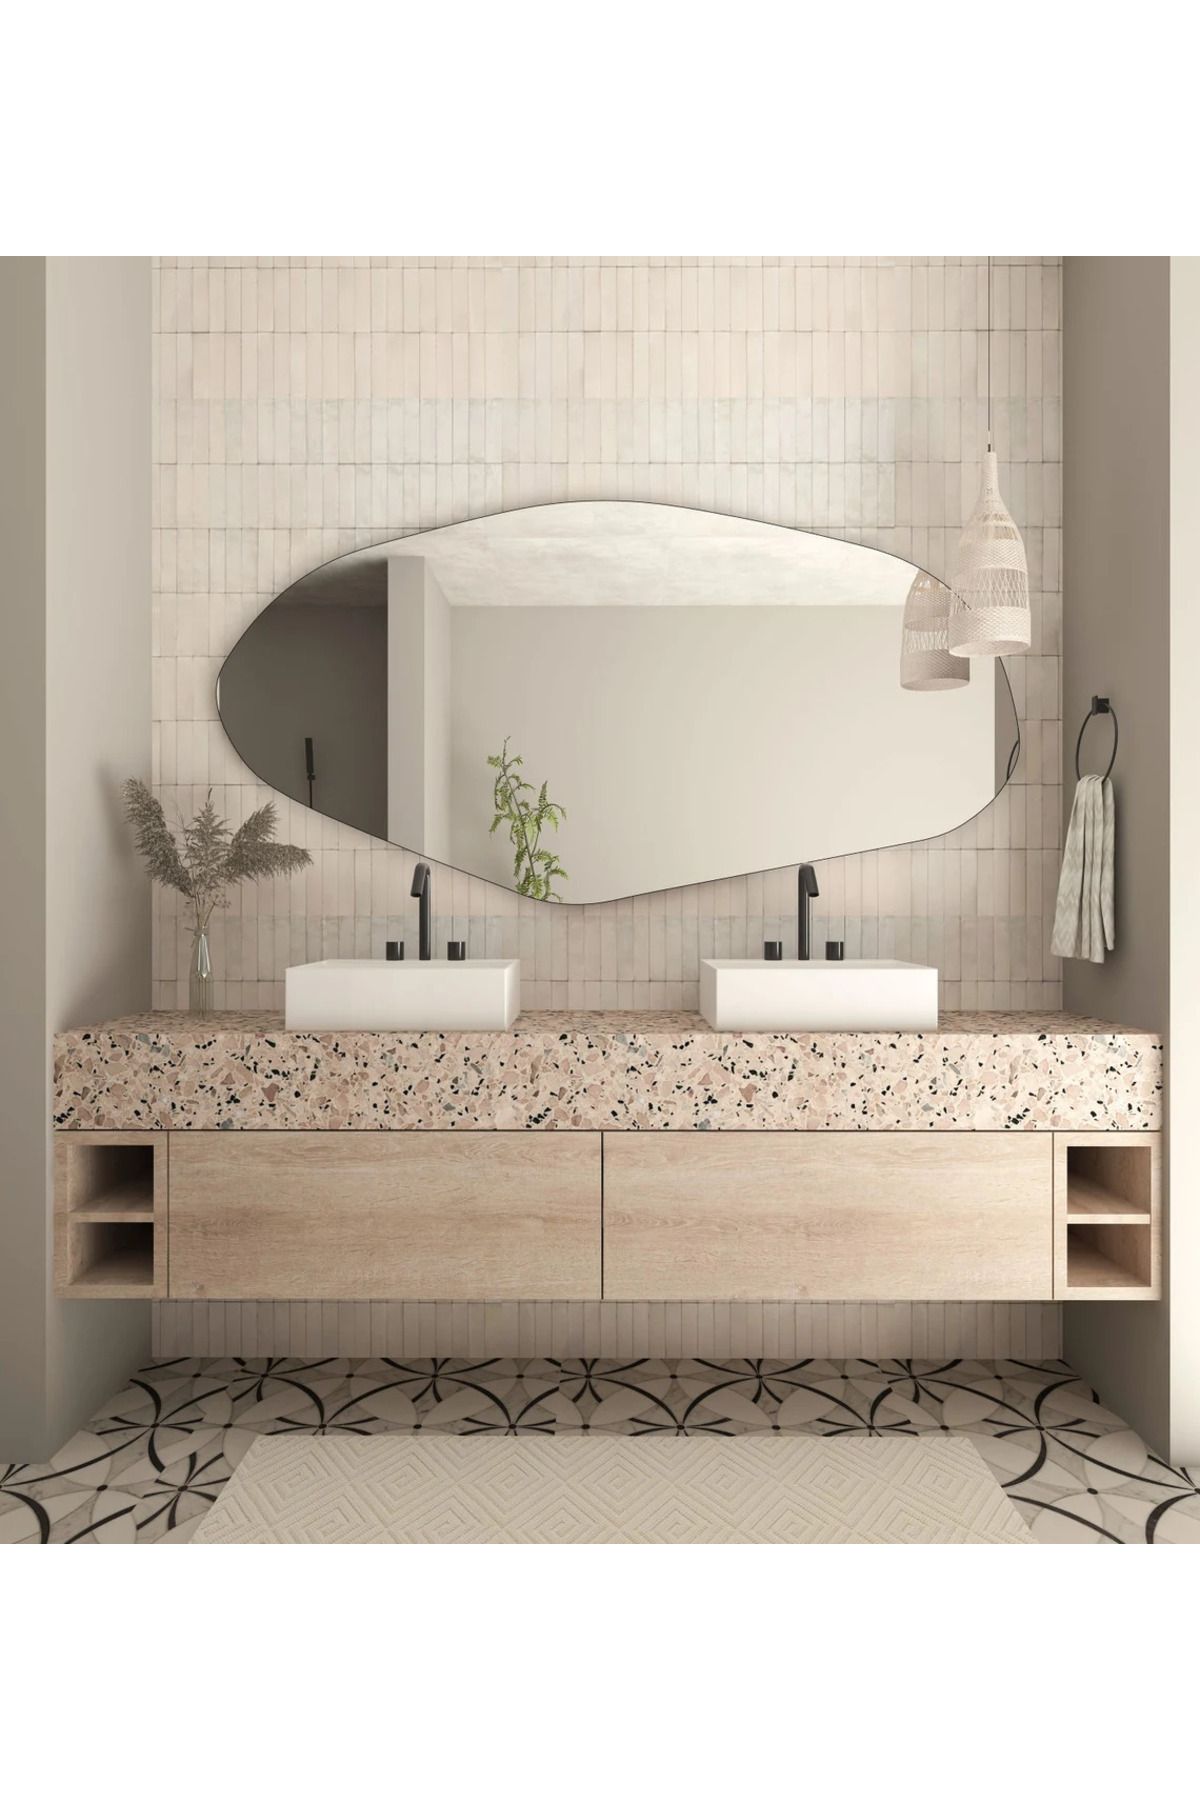 FNC CONCEPT Duvar Aynası Dekoratif Asimetrik Banyo Konsol Aynası 140x70cm